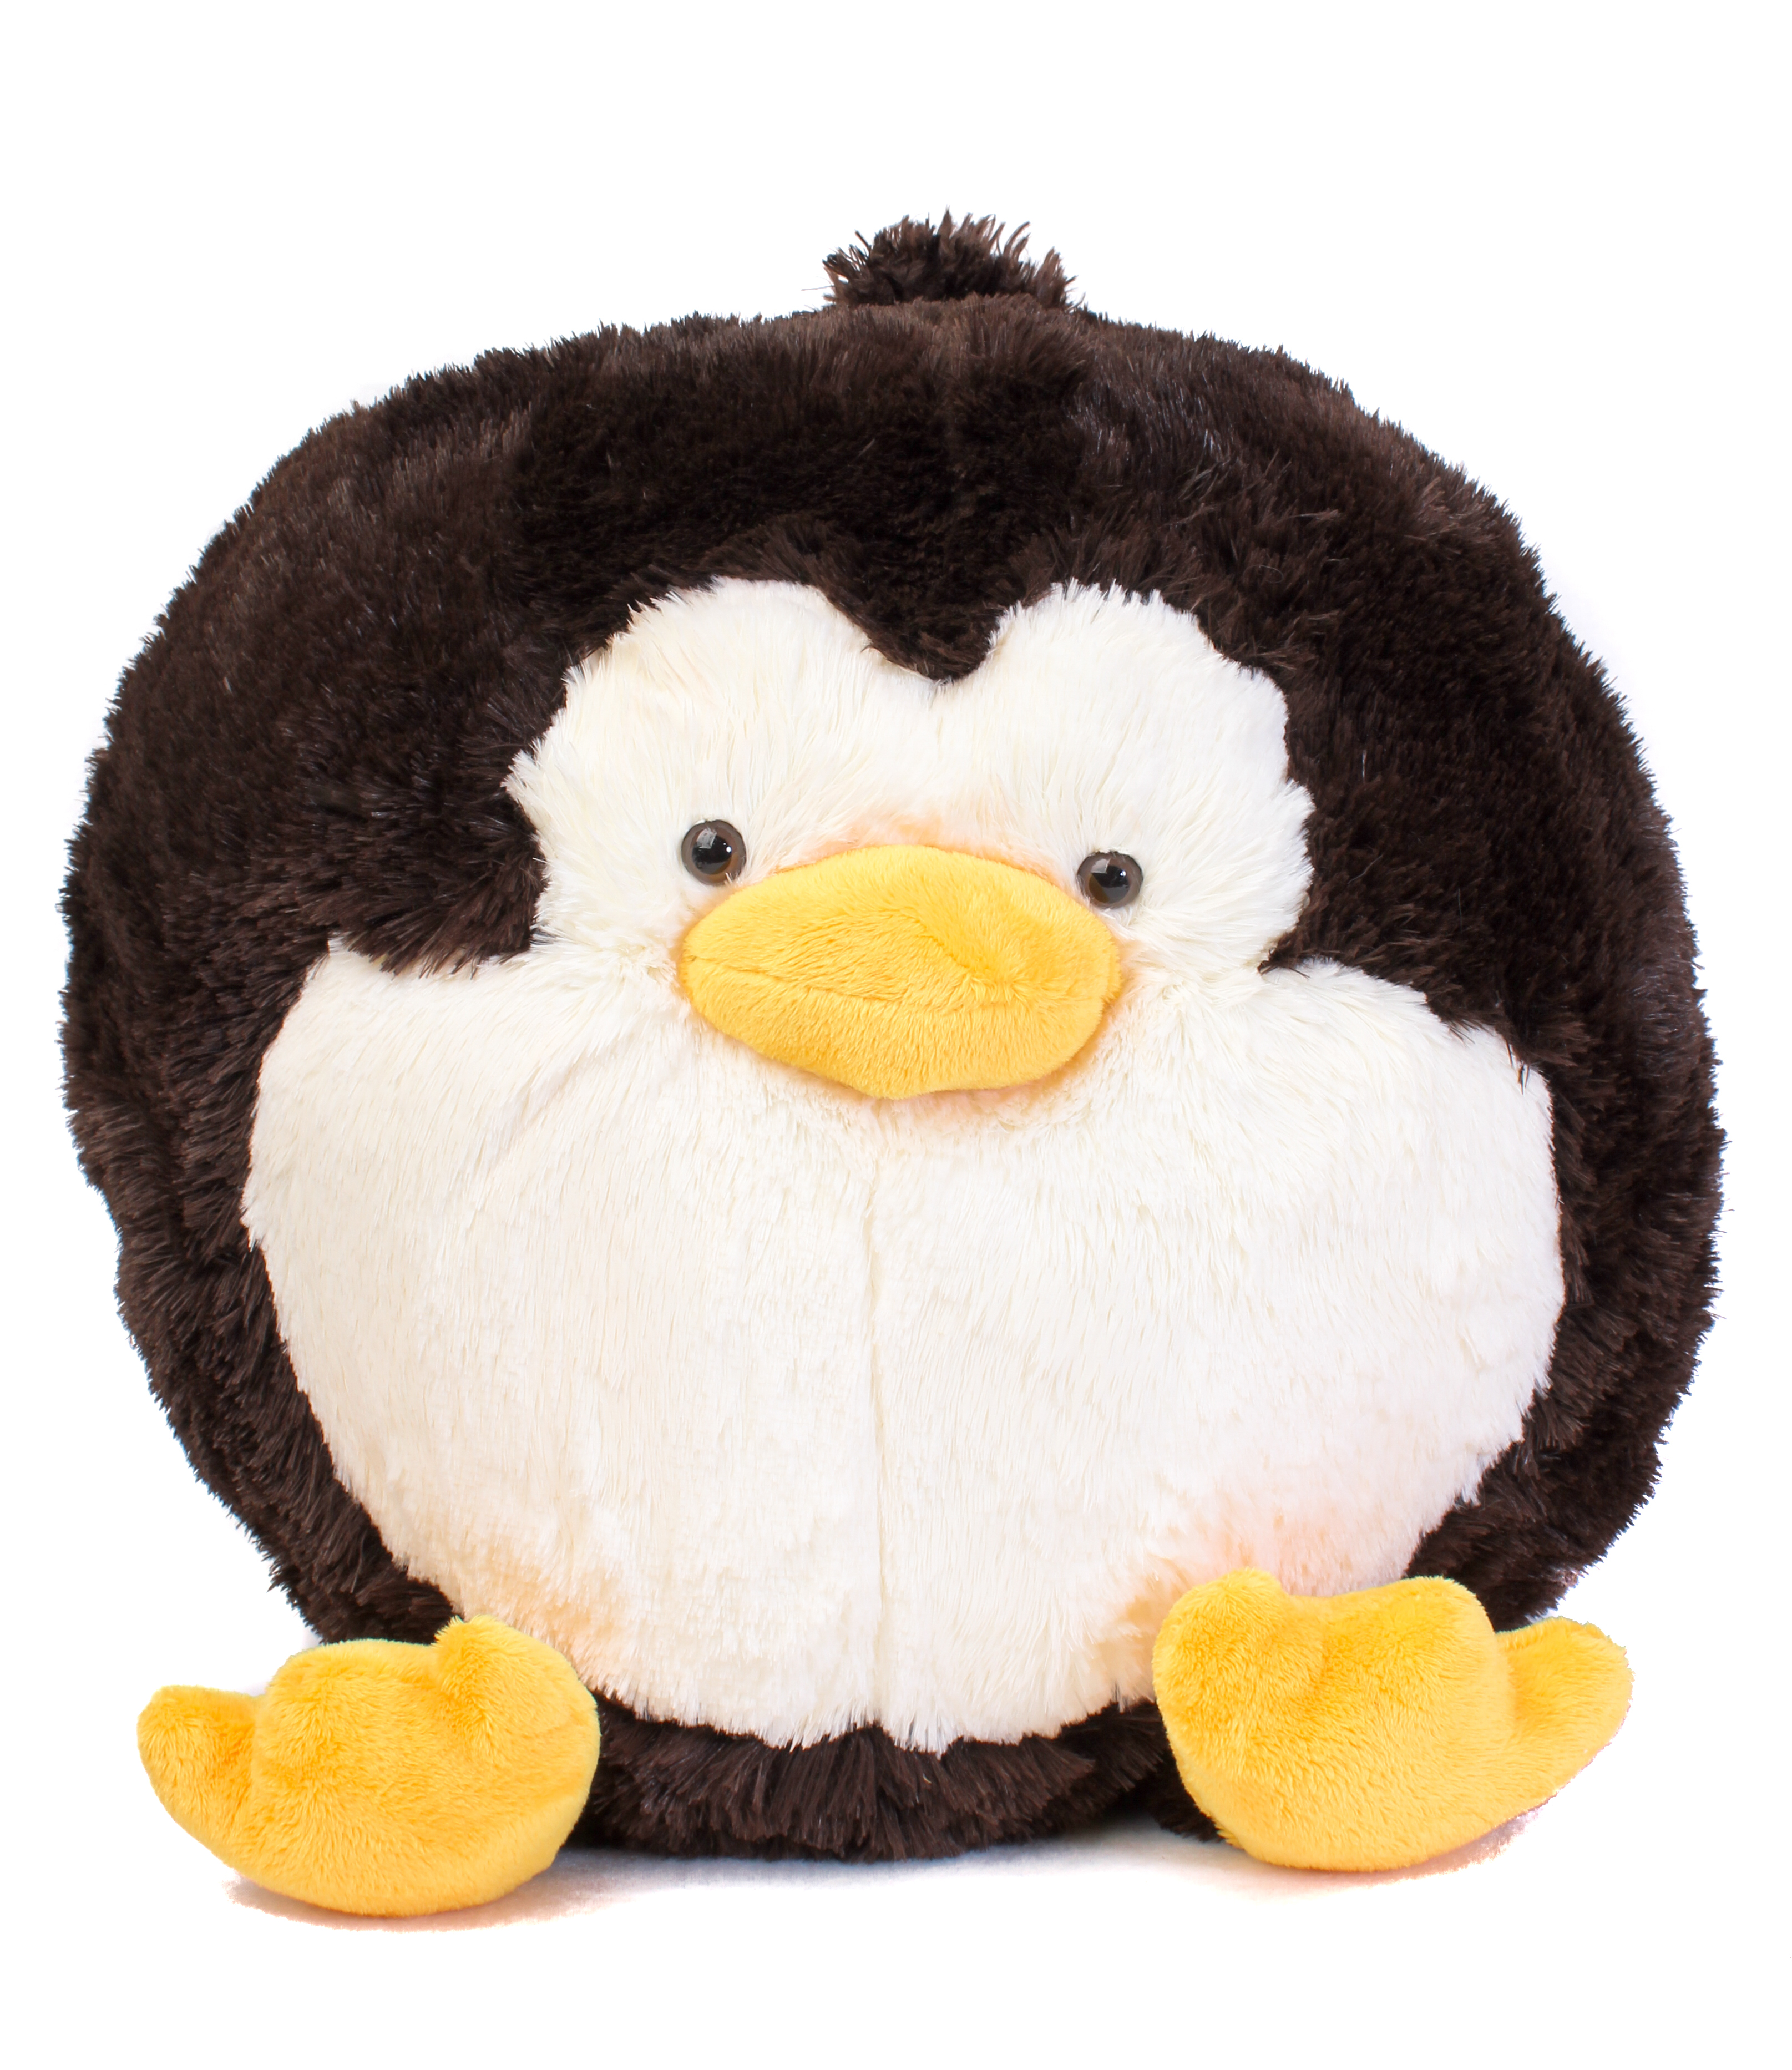 Мягкая игрушка круглая "Пингвин" 38 см